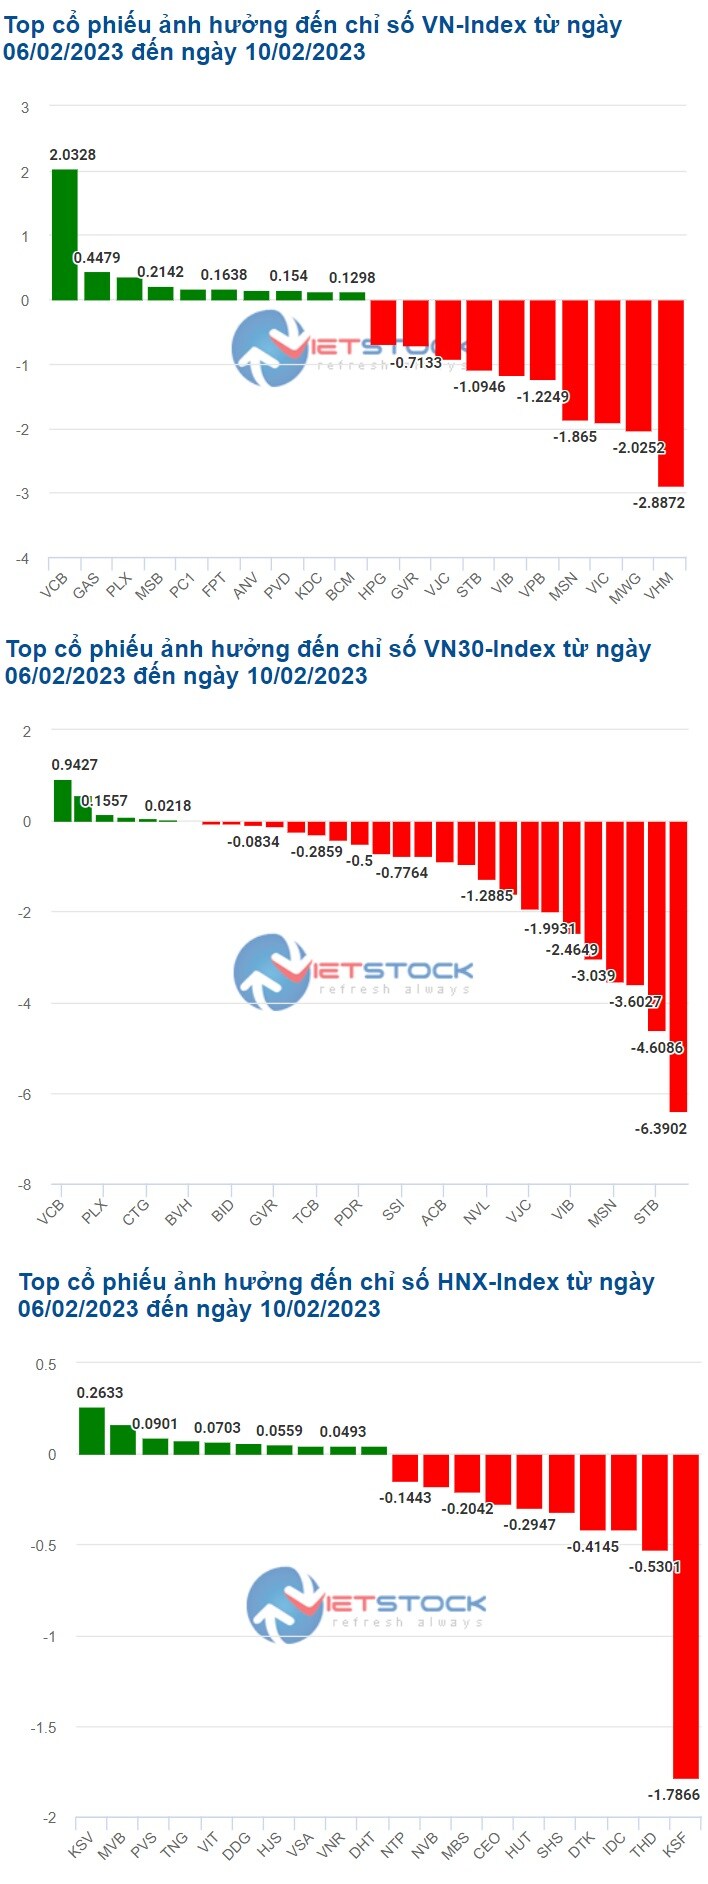 VHM cùng MWG kéo VN-Index lùi sát mốc 1,050 điểm